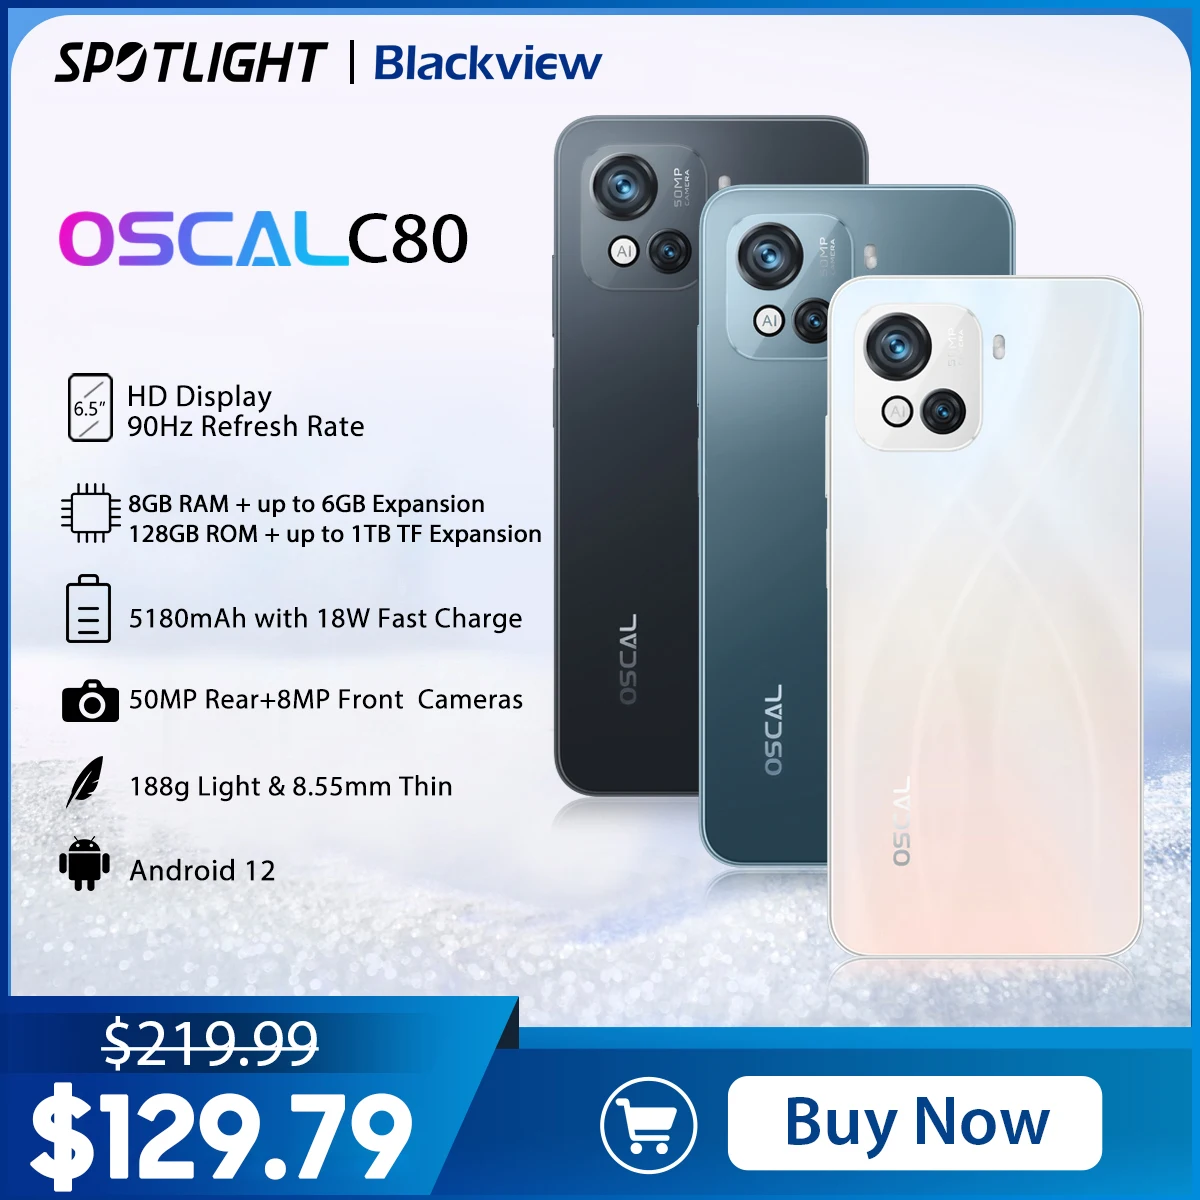 Tanio 【Światowa premia】 blackview Oscal C80 Smartphone 8GB sklep